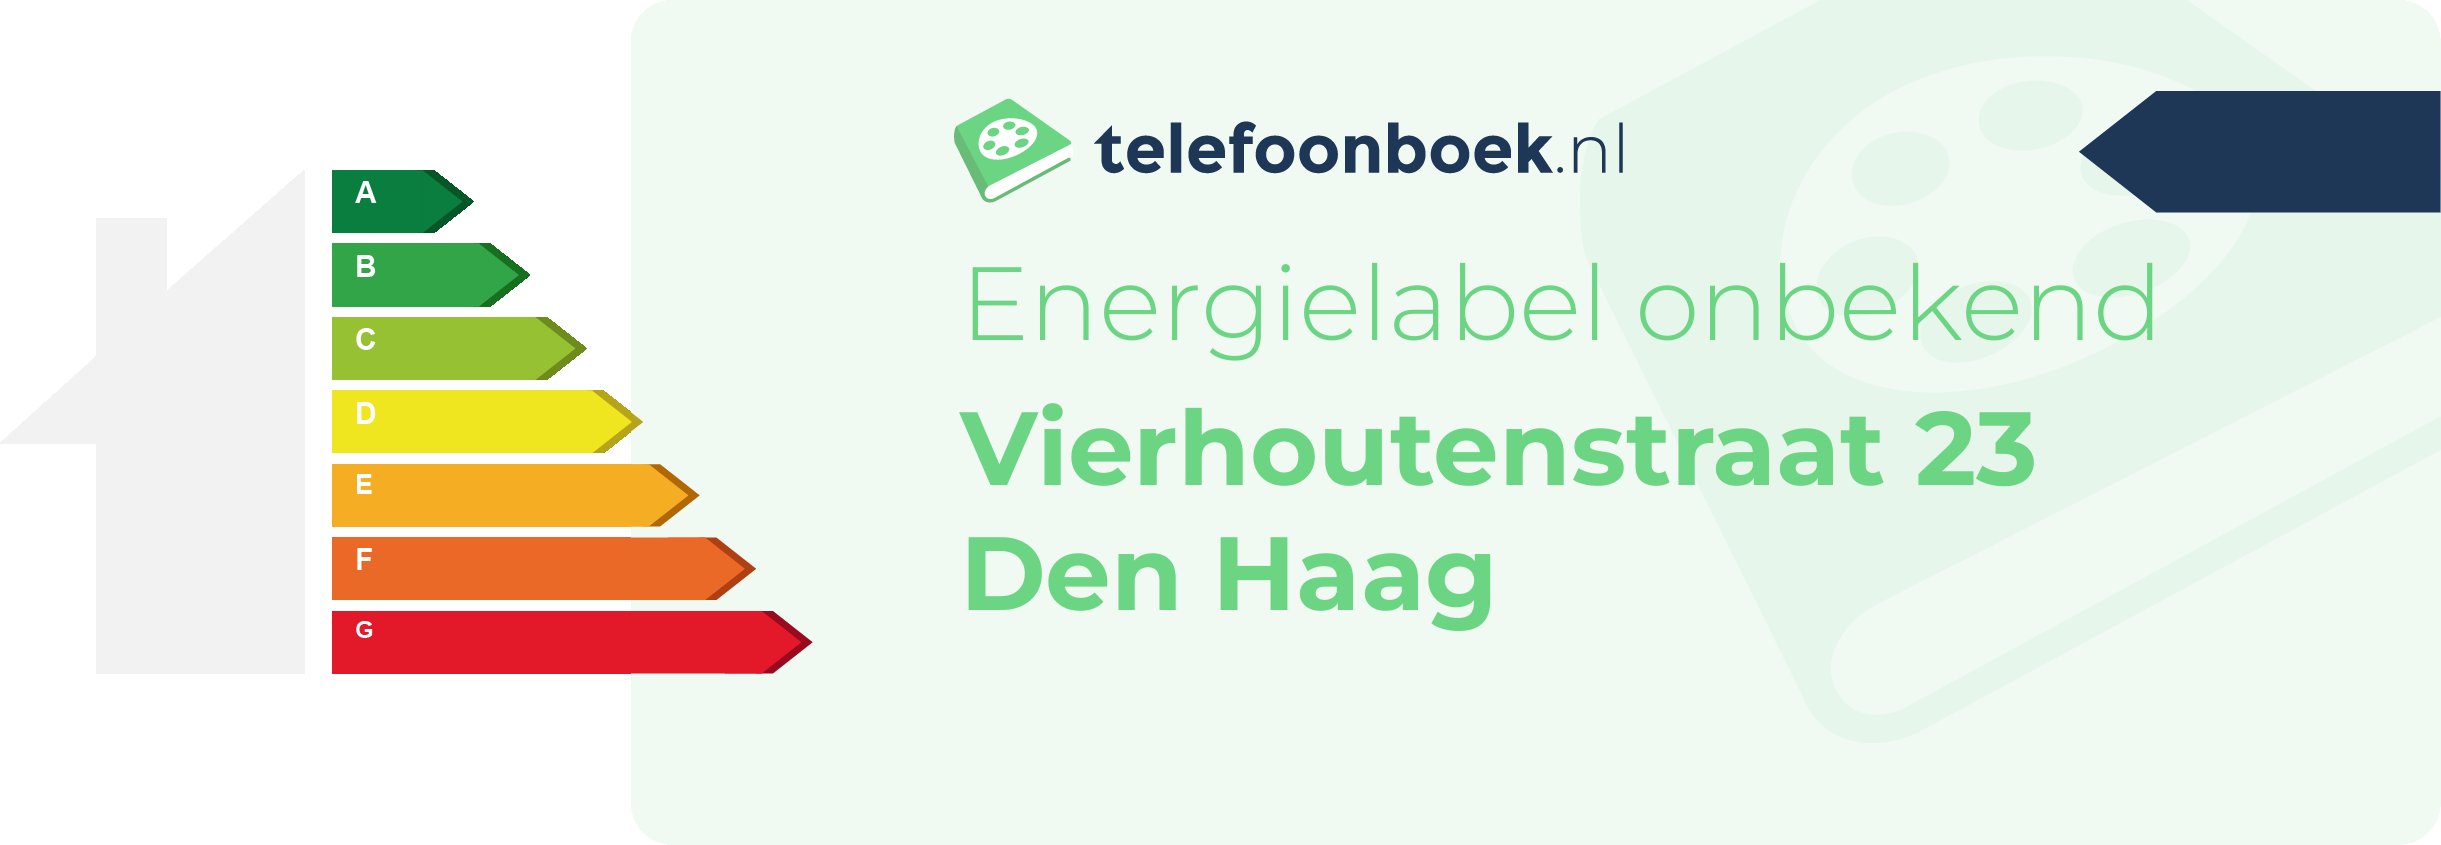 Energielabel Vierhoutenstraat 23 Den Haag